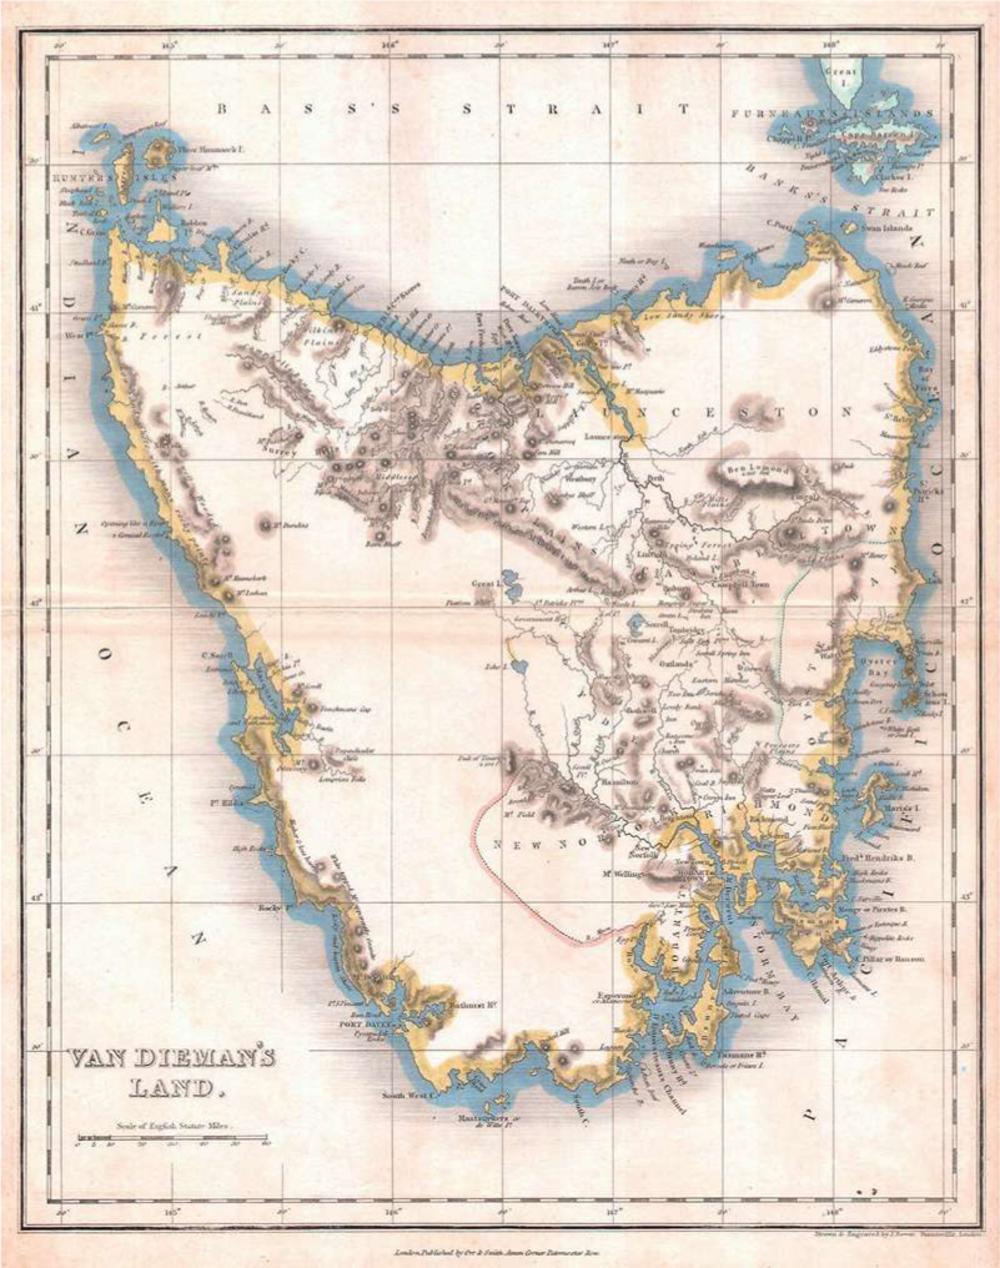 Kaart van Tasmanië uit 1837 (toen nog Van Diemensland) gemaakt door John Dower.